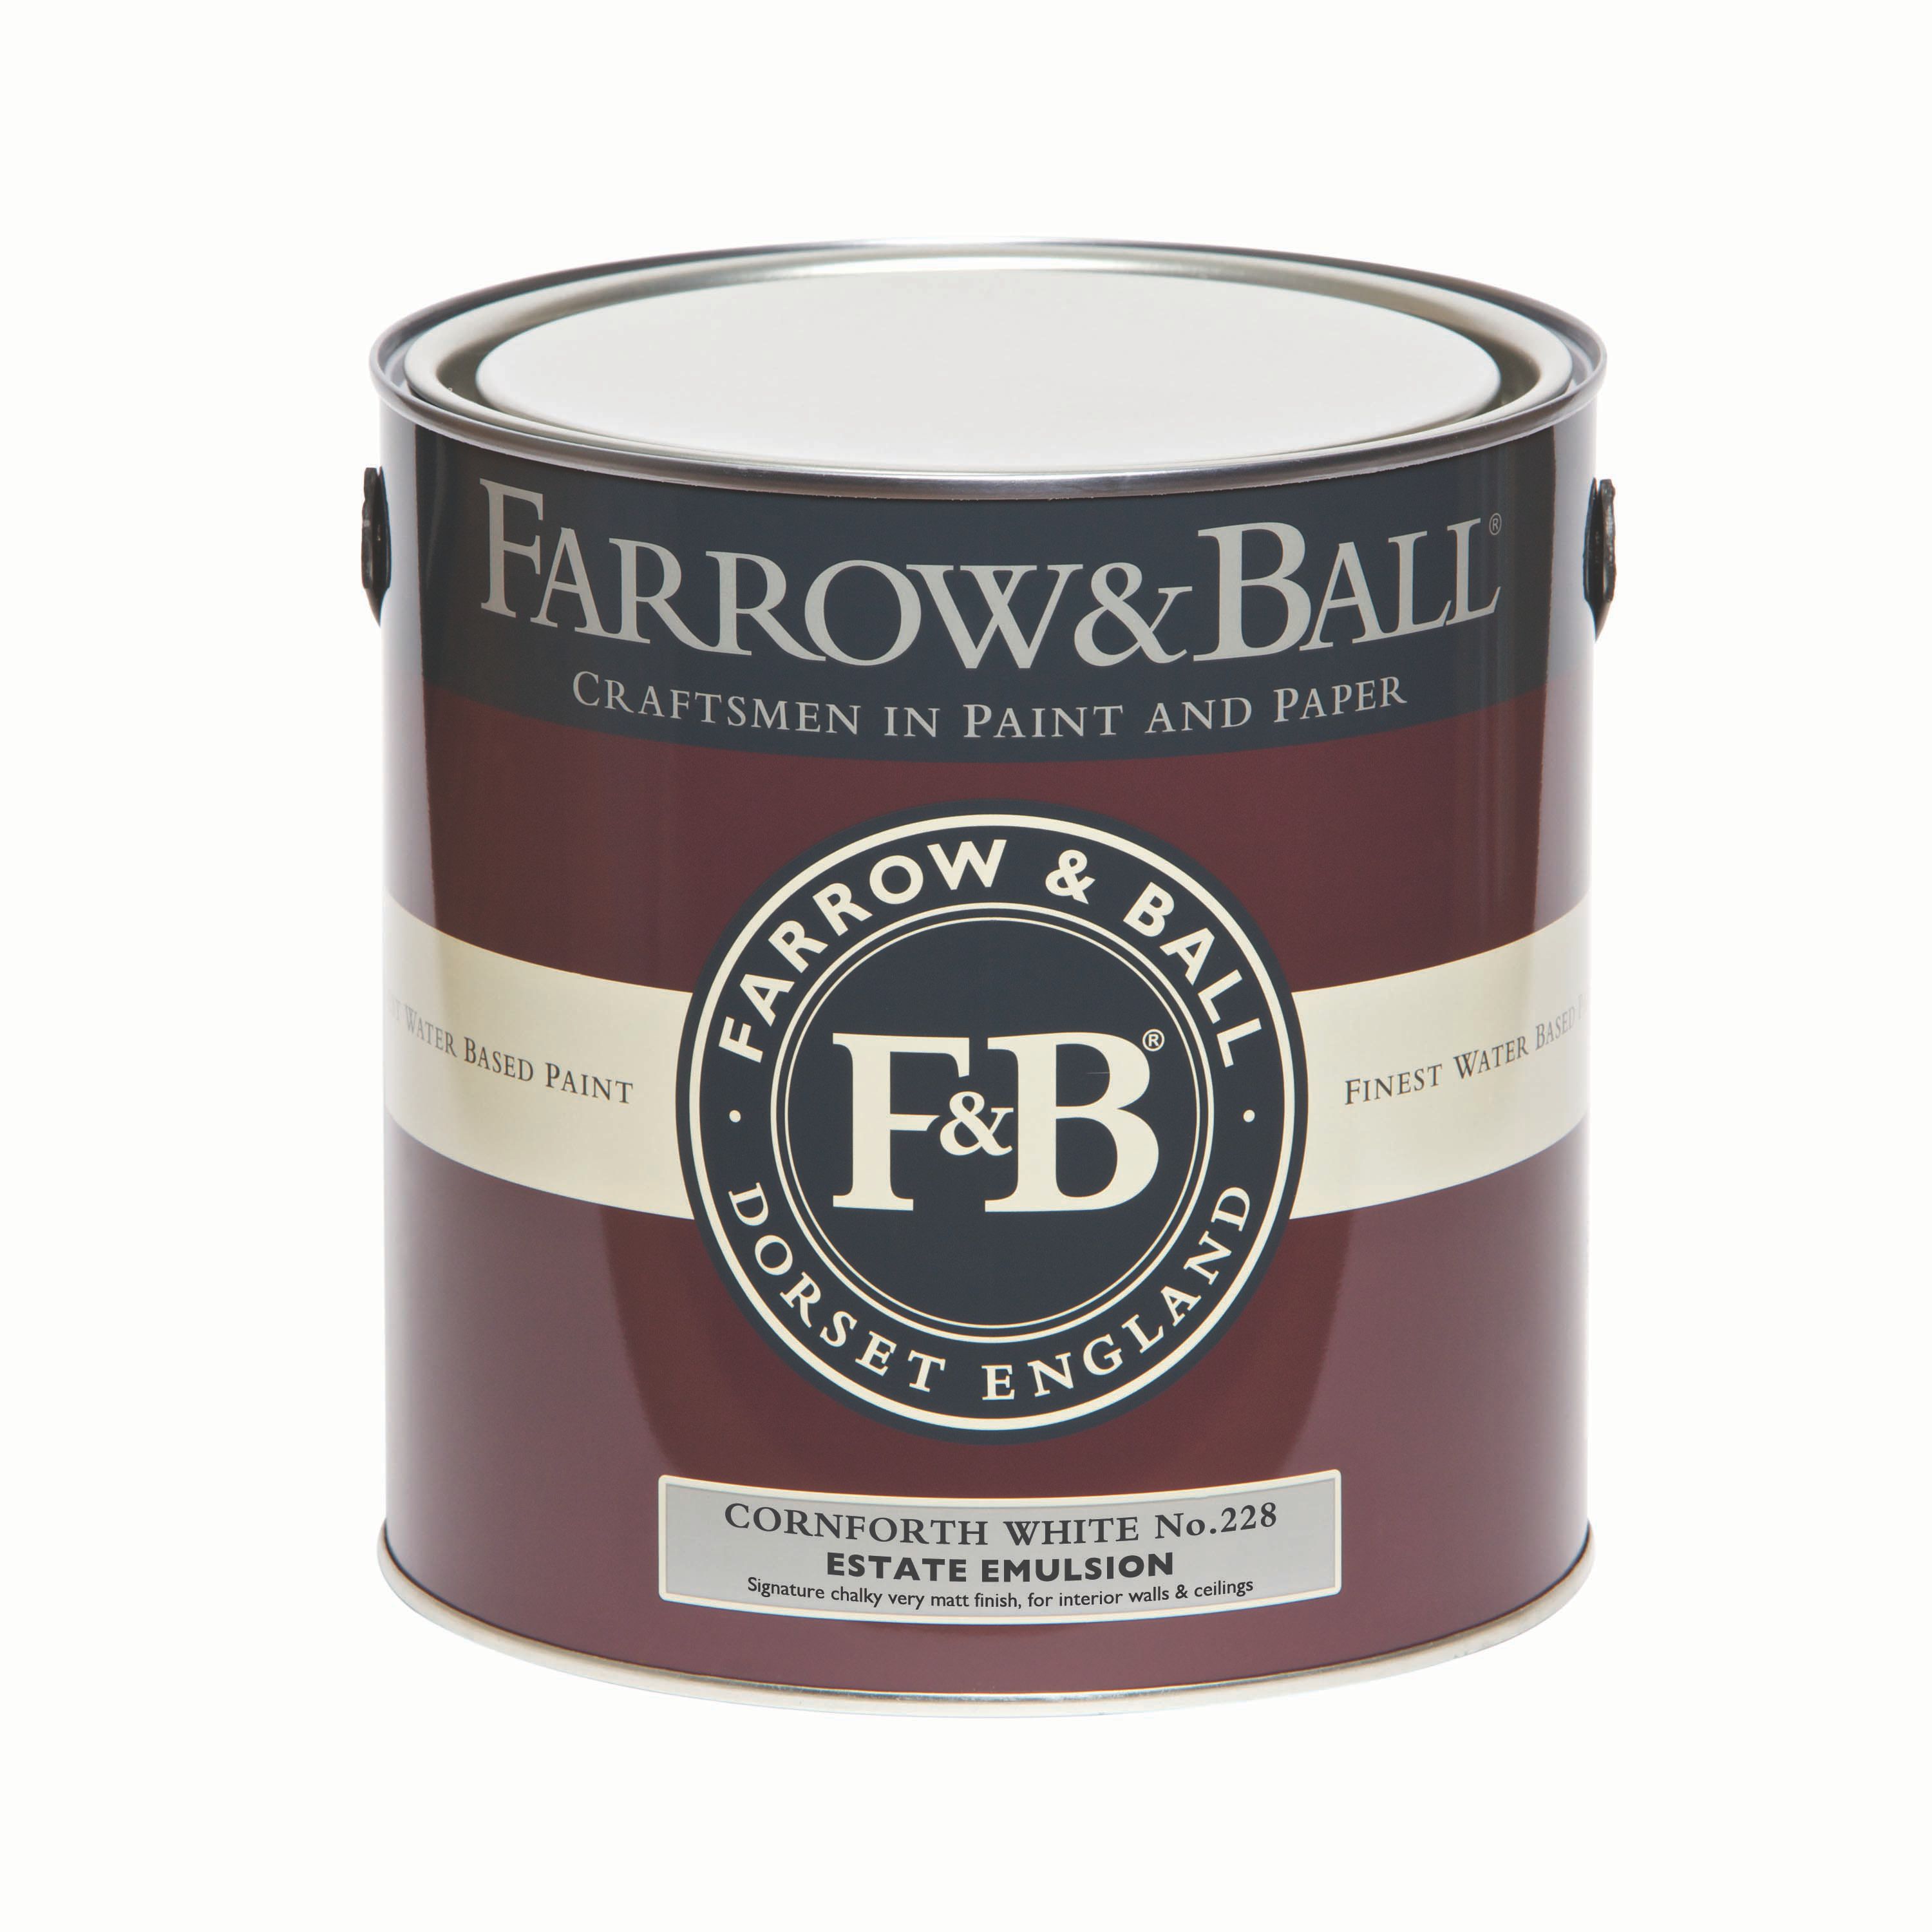 Farrow & Ball Estate Cornforth white No.228 Matt Emulsion paint, 2.5L